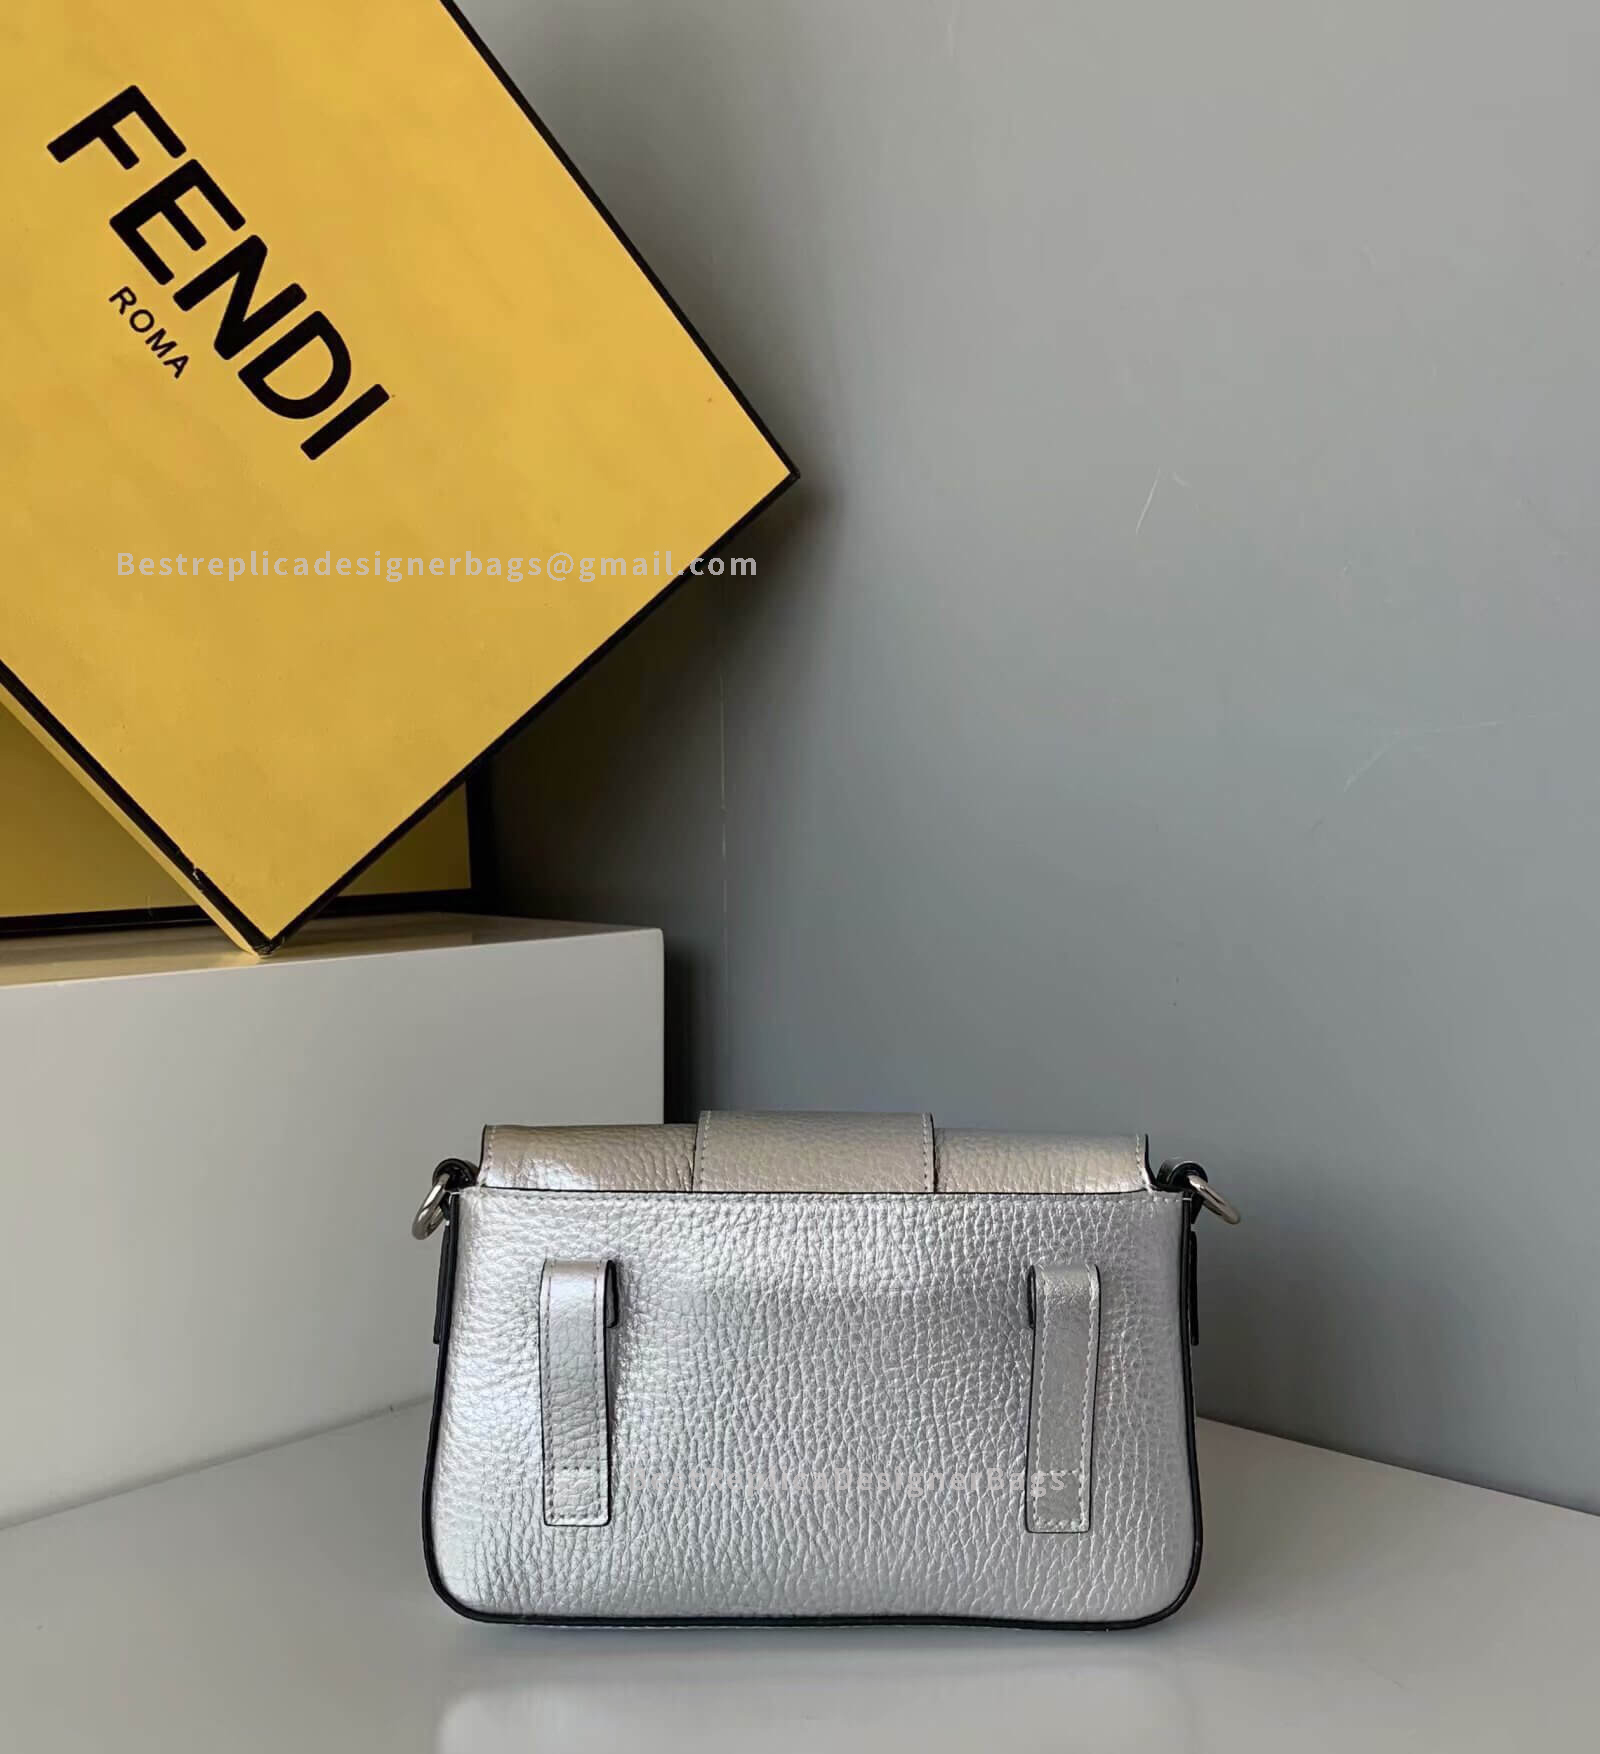 Fendi Baguette Mini Silver Leather Bag SHW 0132 - Best Fendi Replica